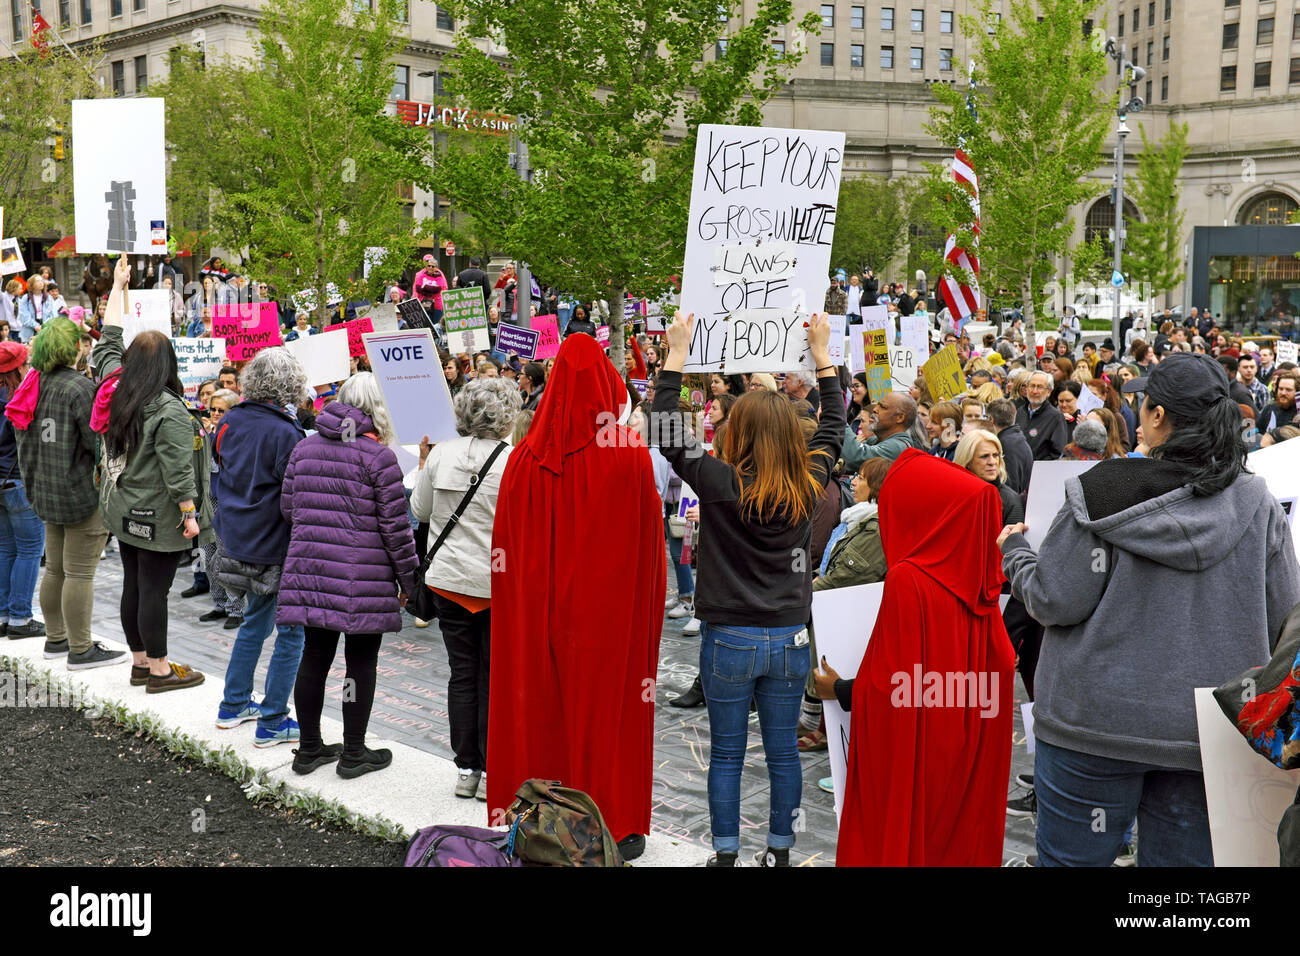 Pro-elección los manifestantes protestan en plaza pública en el centro de la ciudad de Cleveland, Ohio, EE.UU. contra cambios a Ohio las leyes sobre el aborto y los derechos reproductivos. Foto de stock